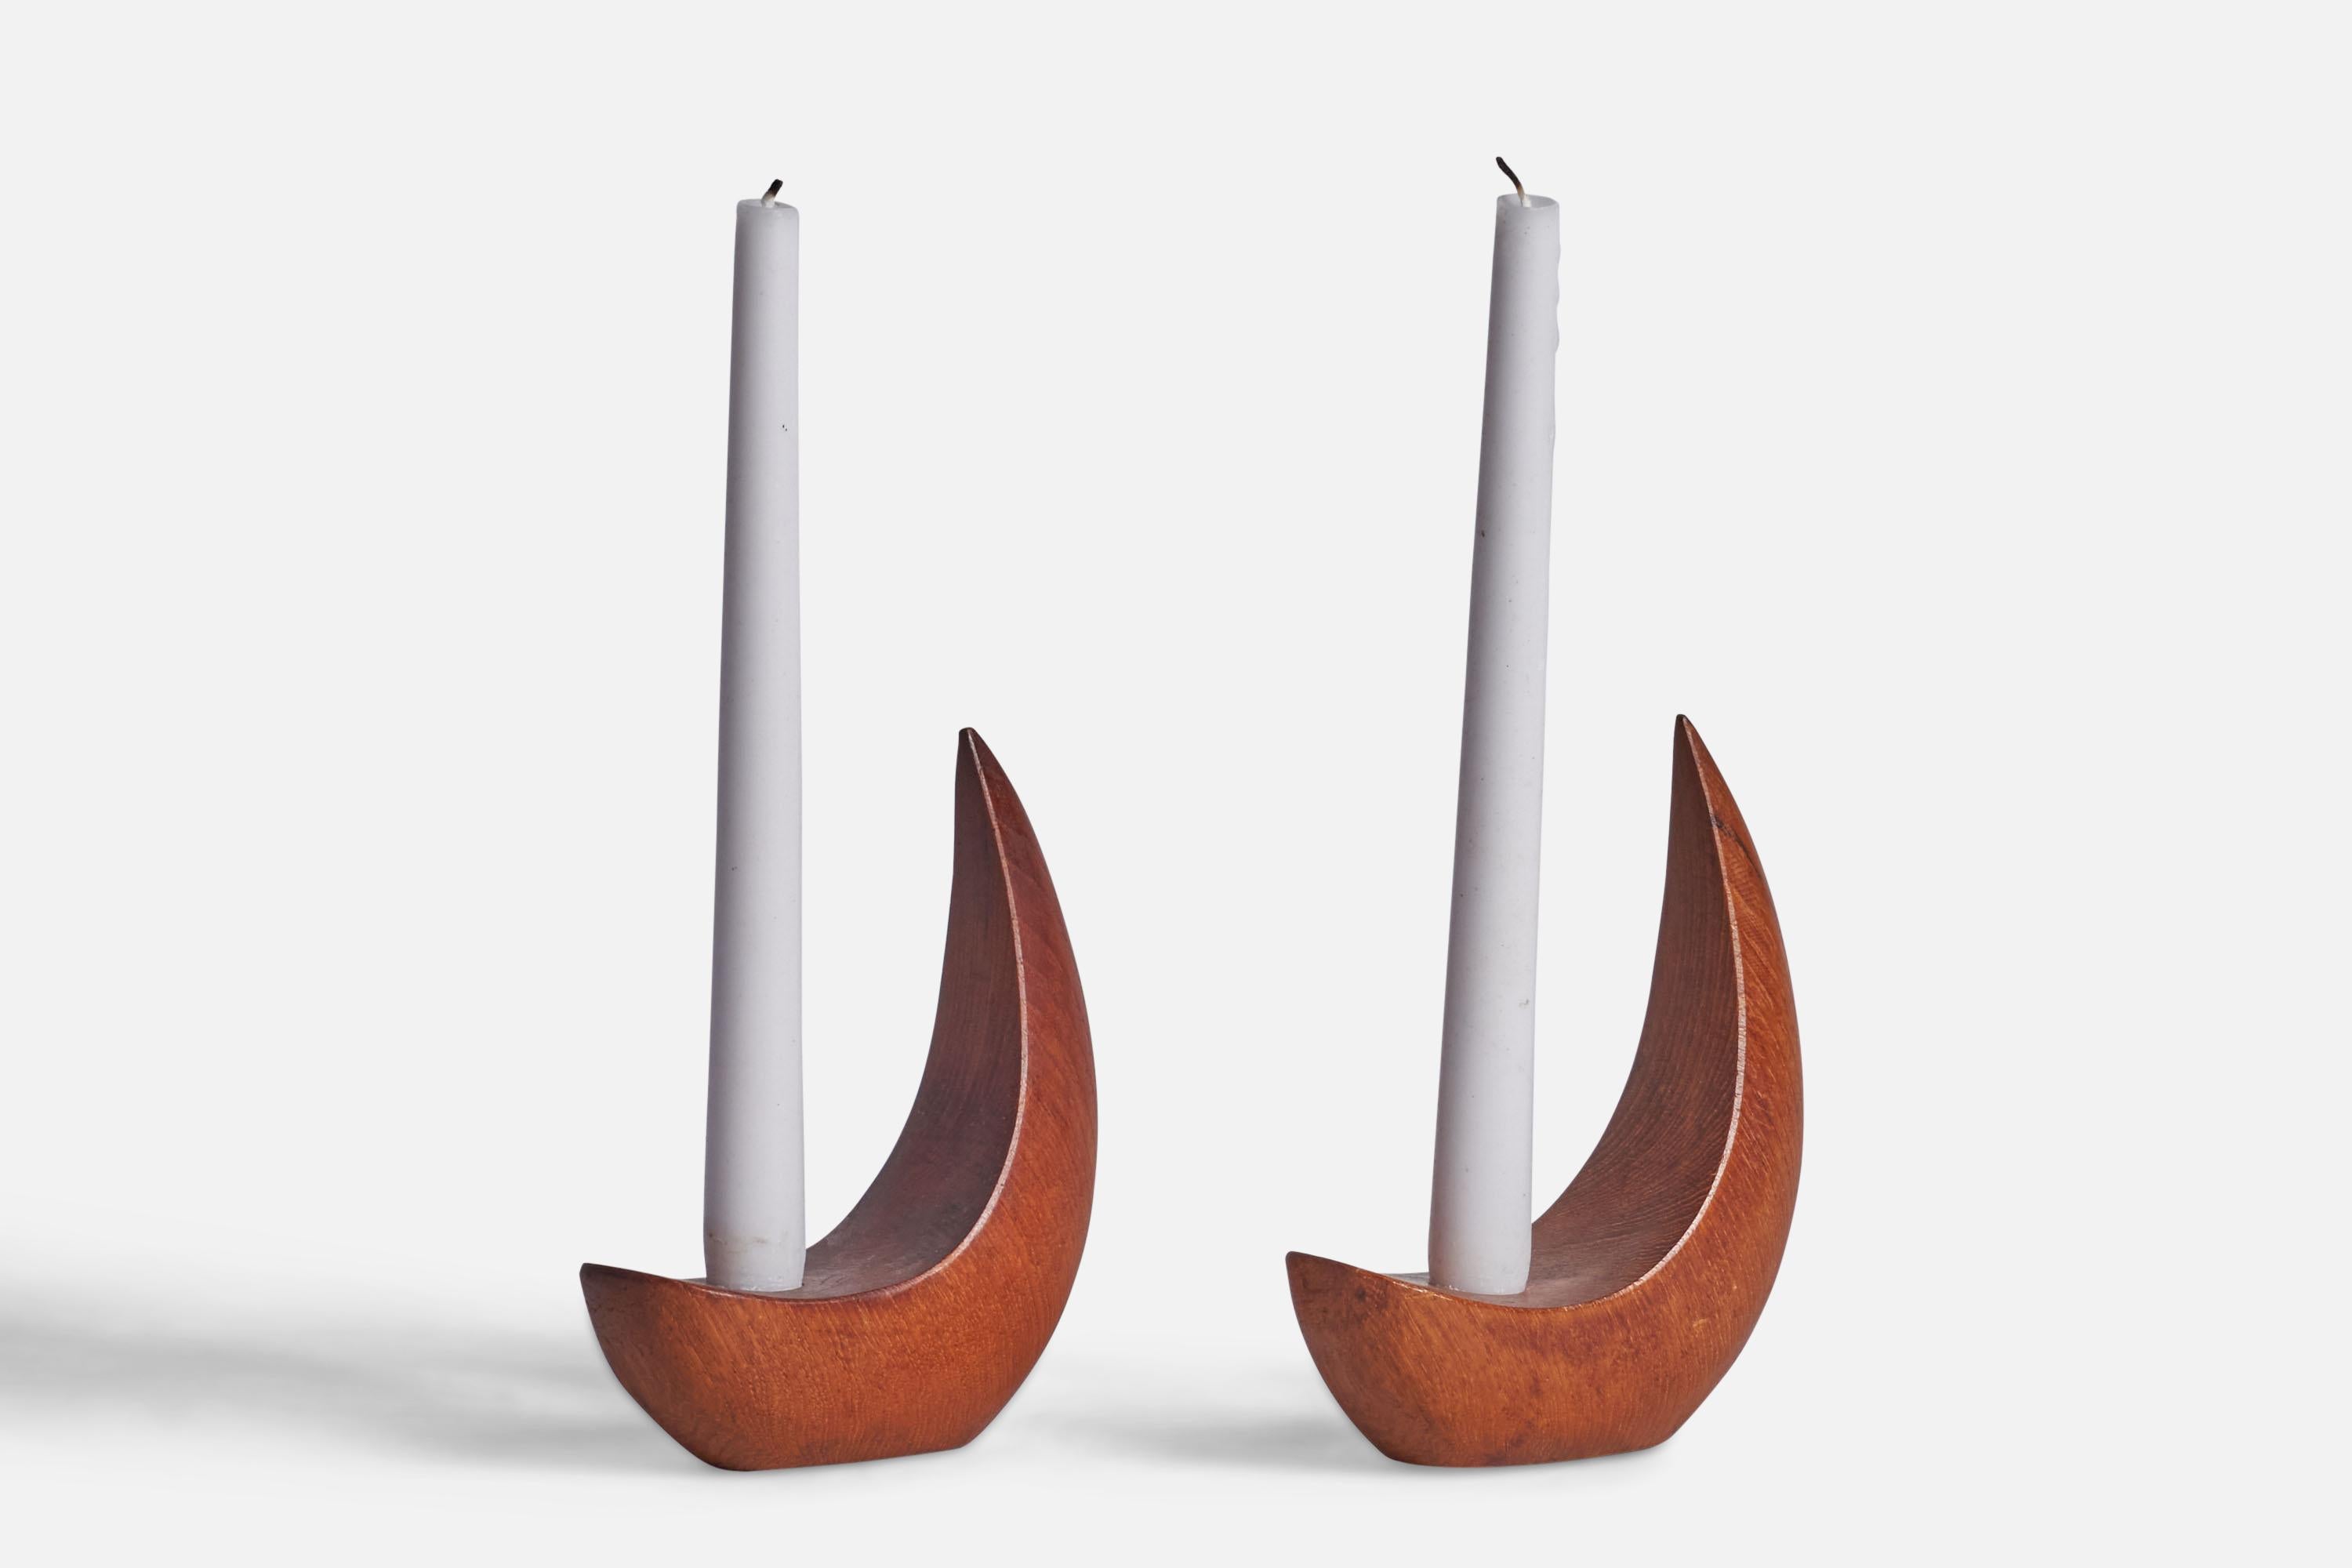 Ein Paar Teakholz-Kerzenhalter, entworfen und hergestellt von Stig Sandqvist, Schweden, ca. 1960er Jahre.

für Kerzen mit 0.75